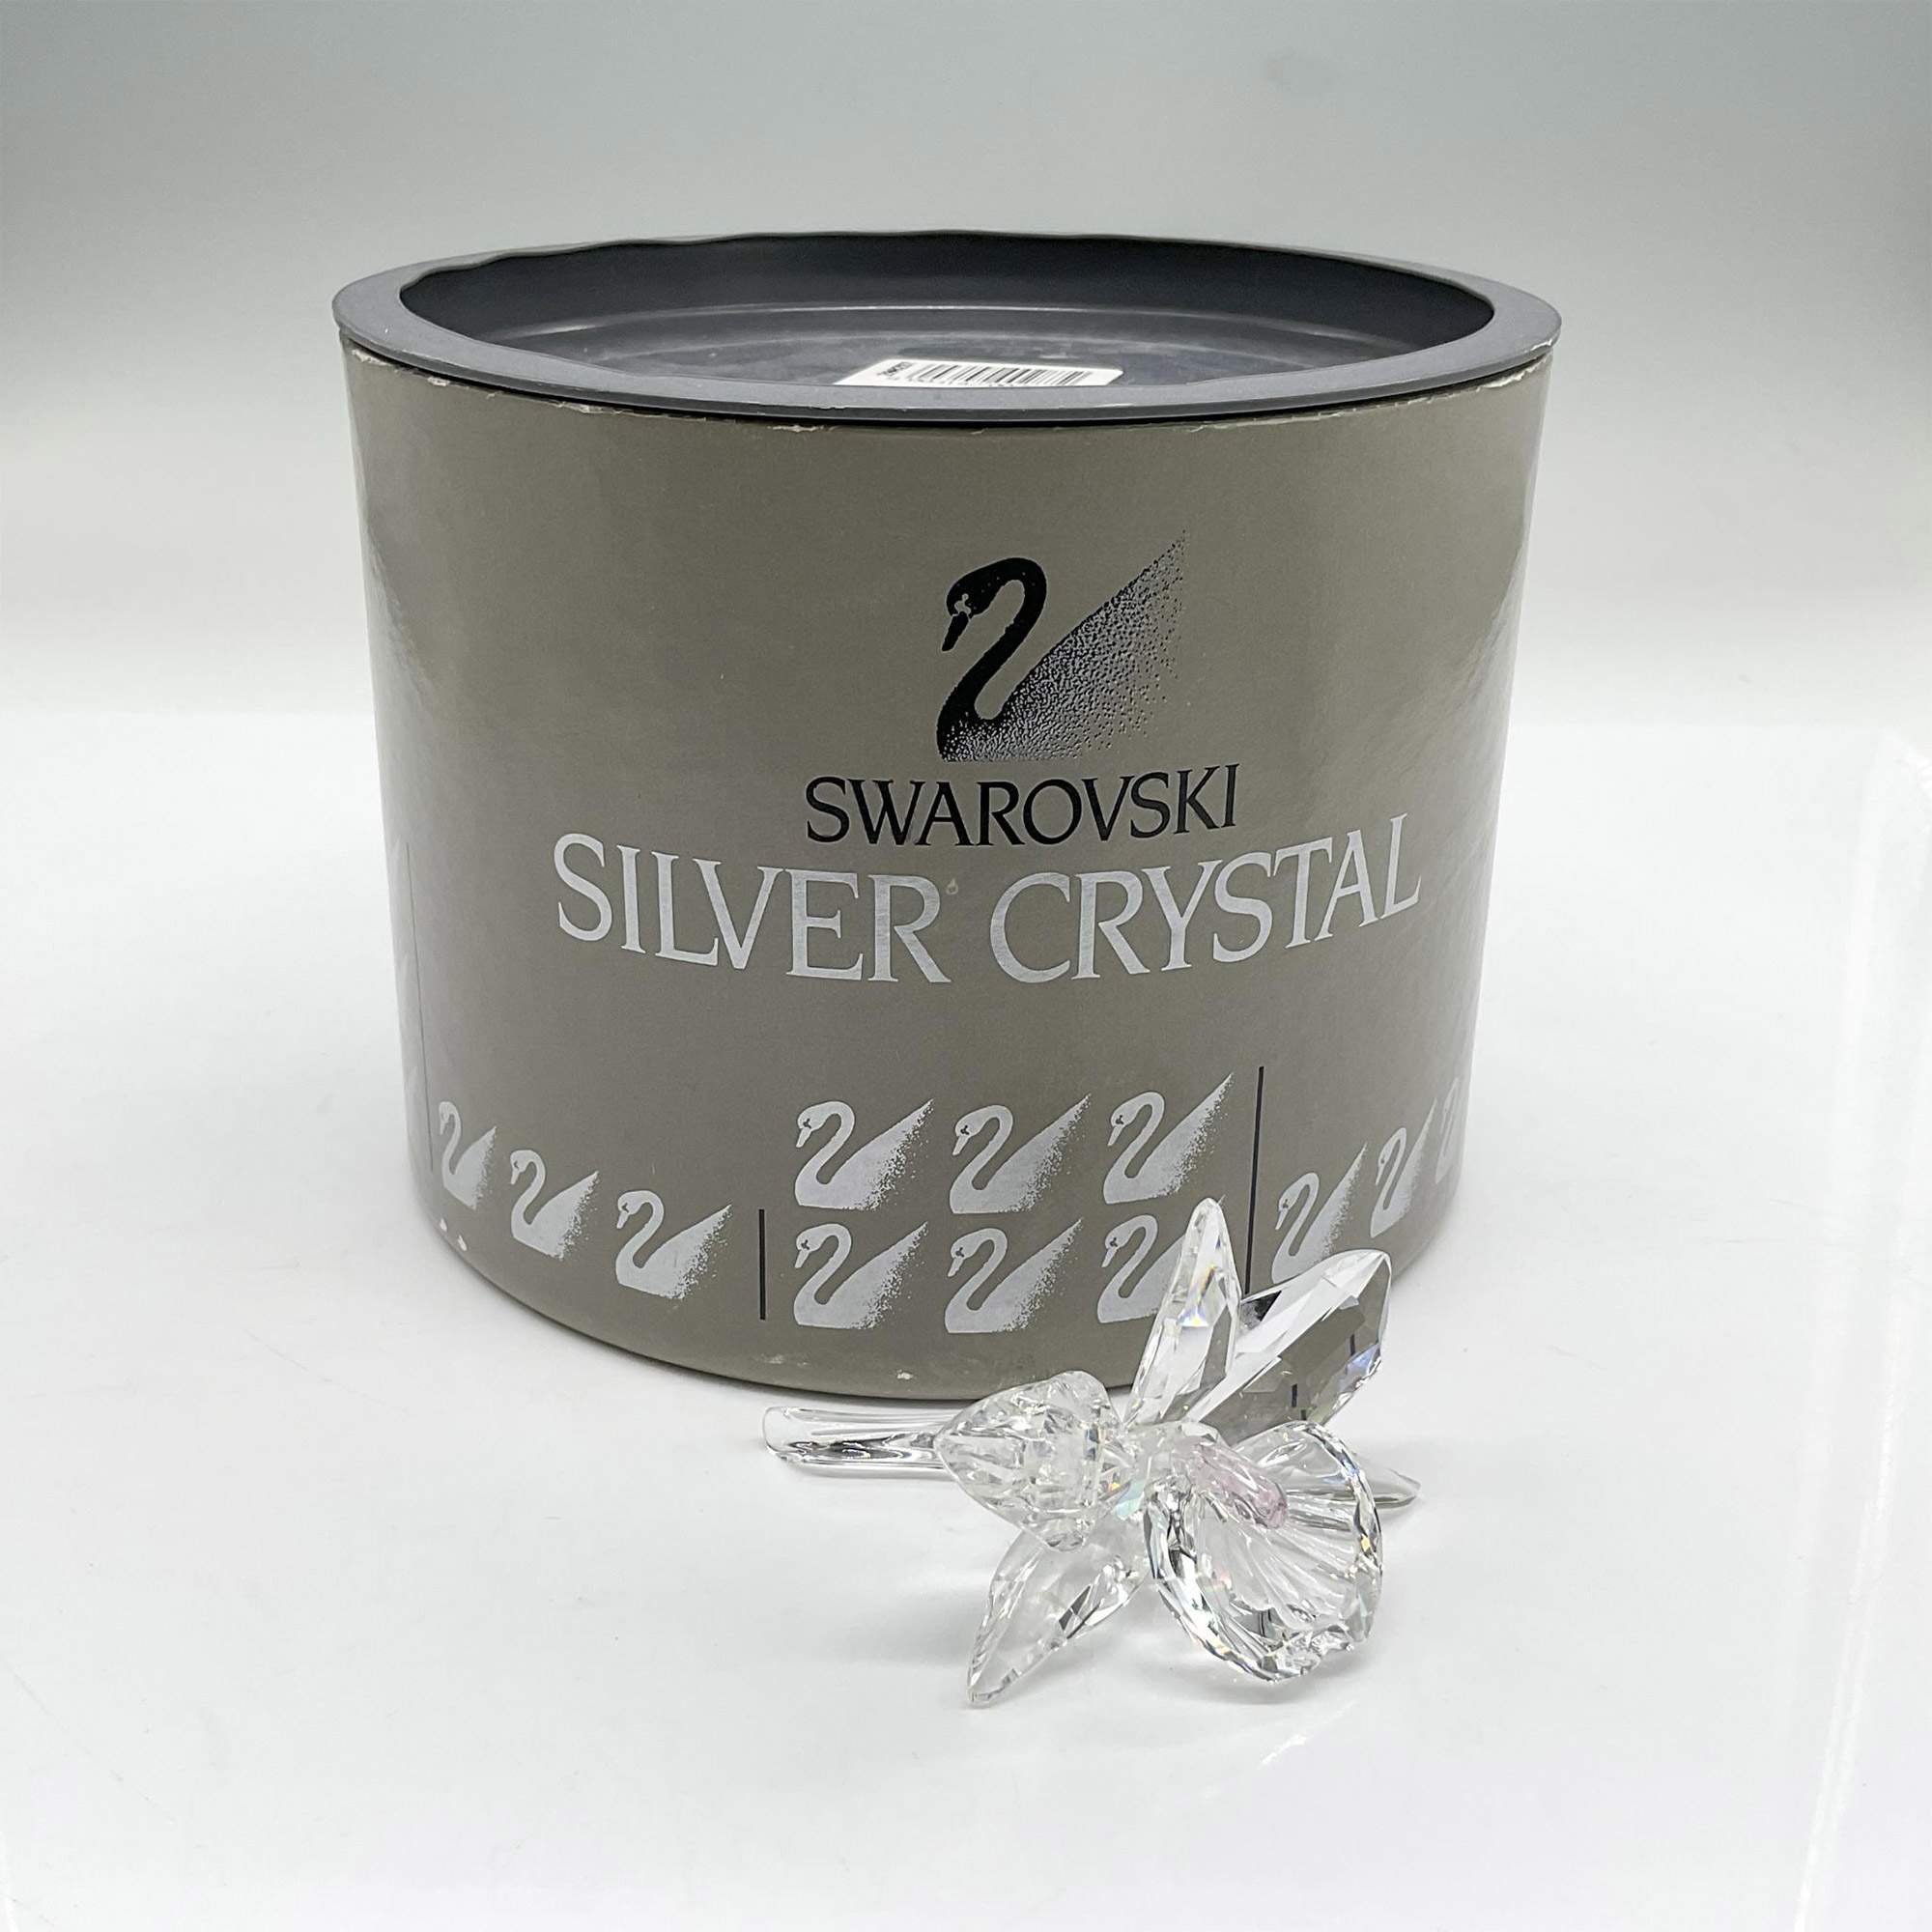 Swarovski Silver Crystal Figurine, Orchid Light Pink Pistil - Image 3 of 3